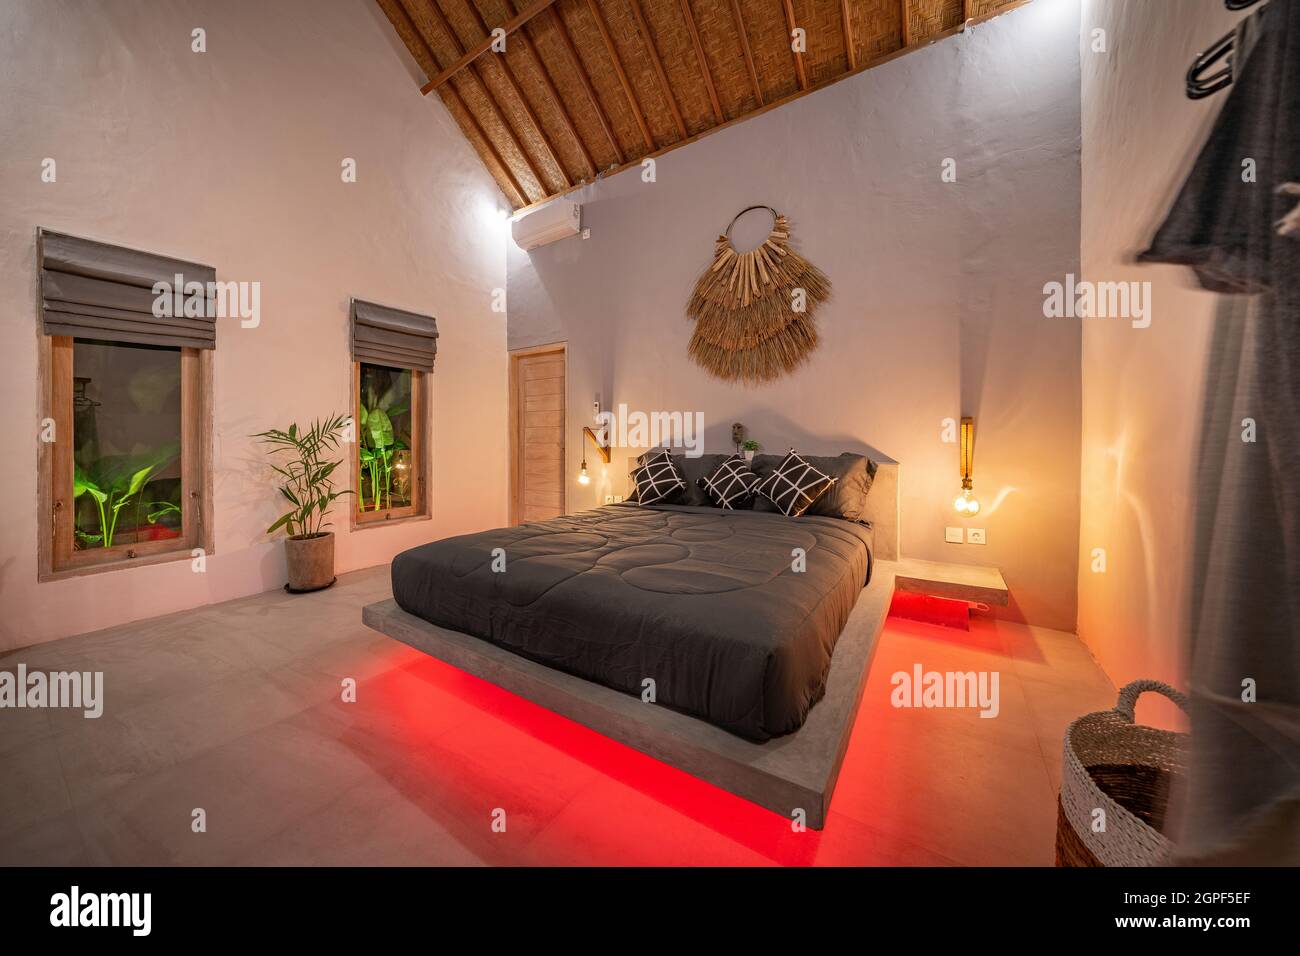 Sureste Plaga Descubrimiento moderna cama de pino de piedra con iluminación led roja, lámparas de pared.  Dormitorio en apartamento loft de lujo - fotografiado con poca luz para  resaltar la atmósfera de luz roja Fotografía